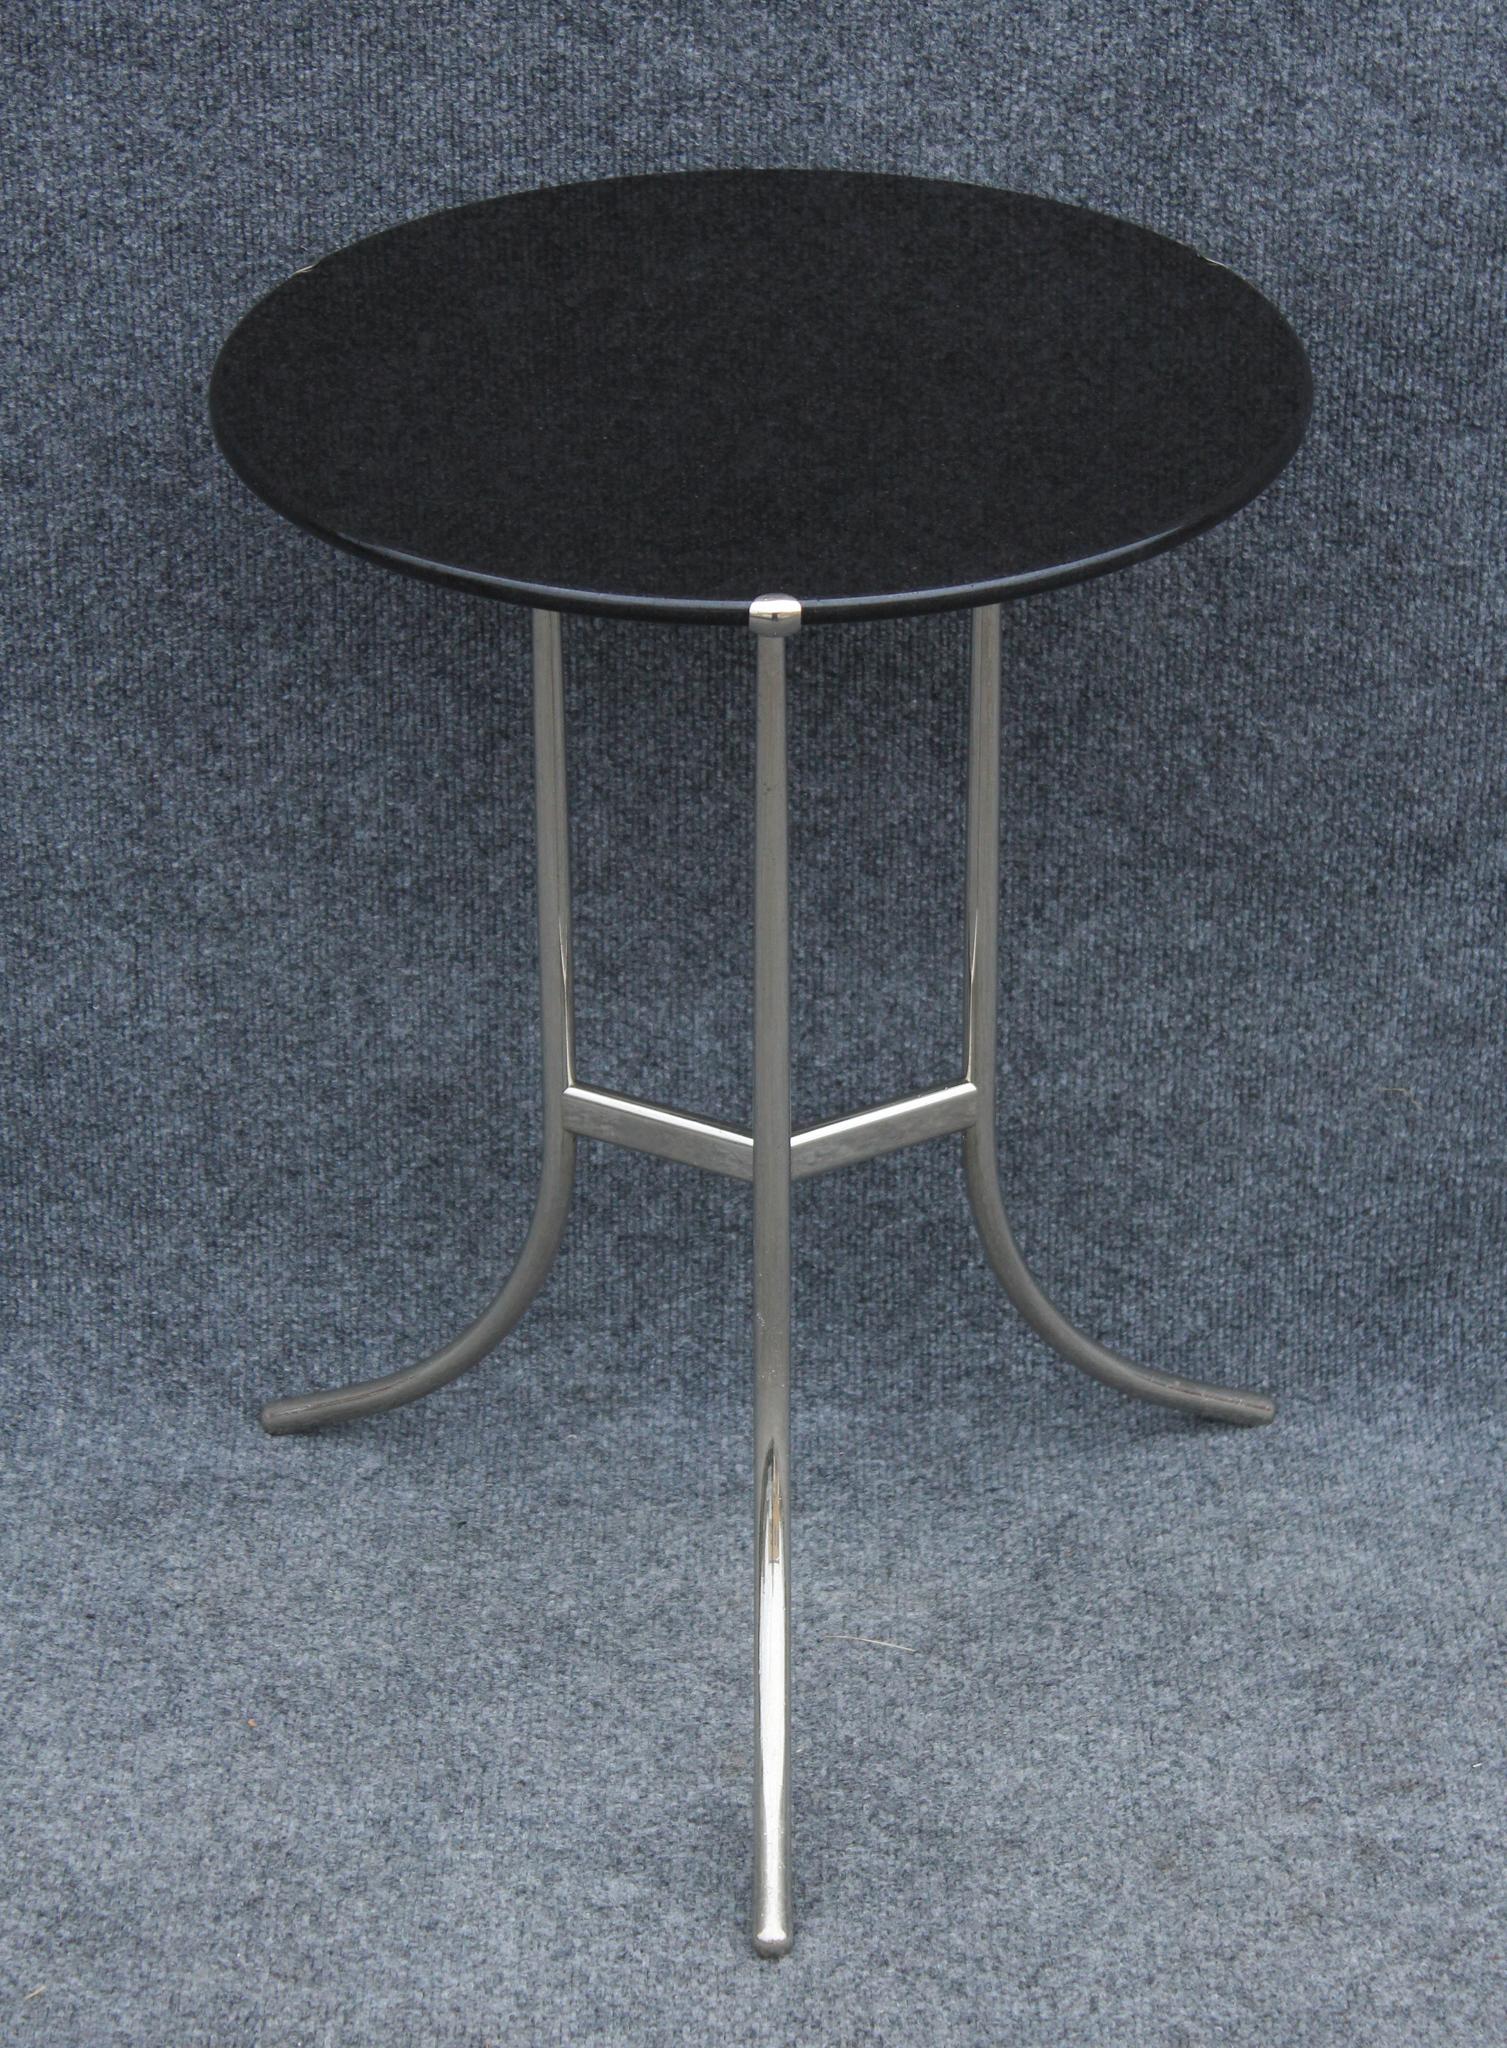 Fabriquée dans les années 1970, cette table a été conçue par l'architecte et edgineer Cedric Hartman. Au début de sa carrière, il s'est fait un nom avec le lampadaire emblématique 1UWV, mais il s'est rapidement fait connaître pour sa qualité de